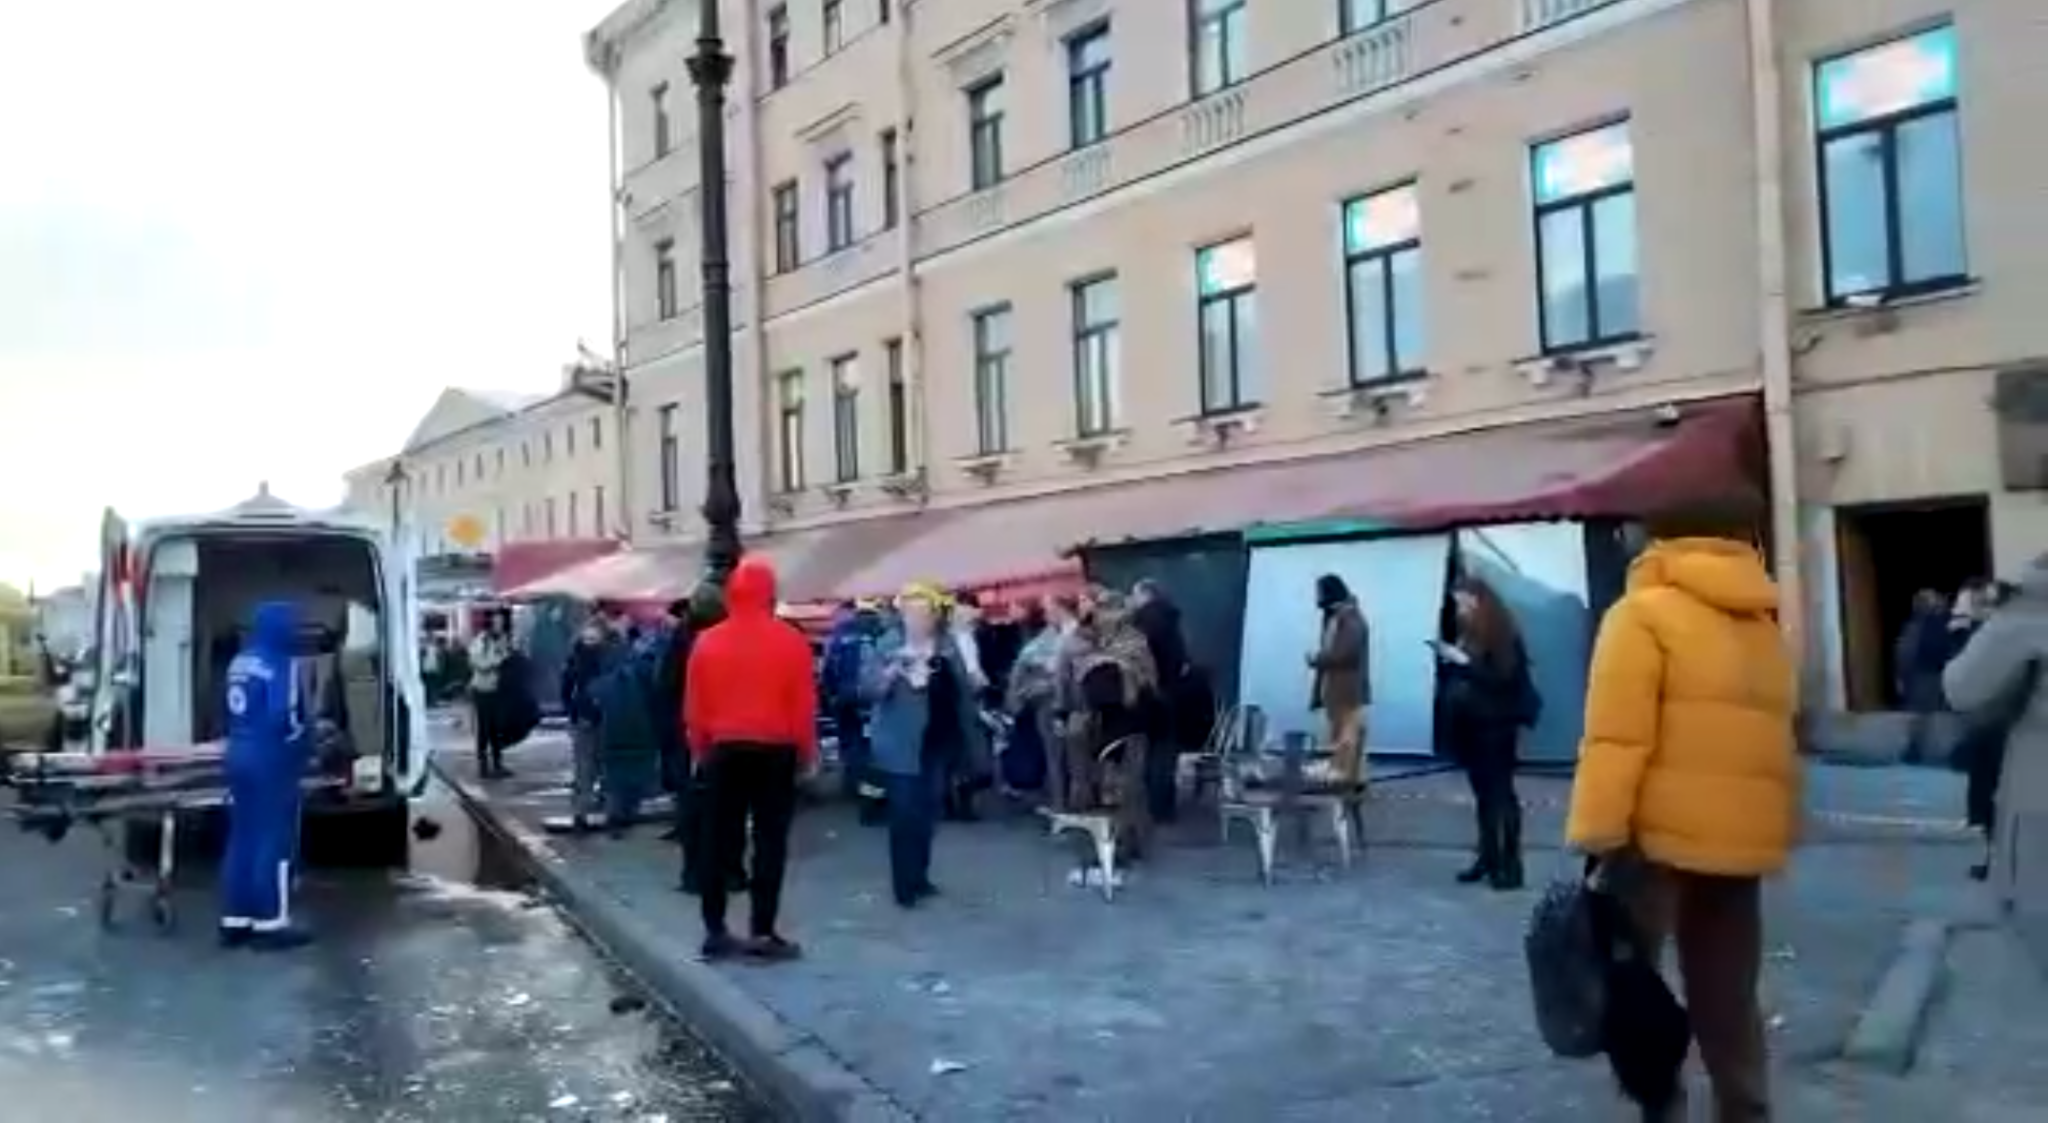 Последствия после взрыва в кафе в Петербурге 2 апреля. Скриншот видео в telegram